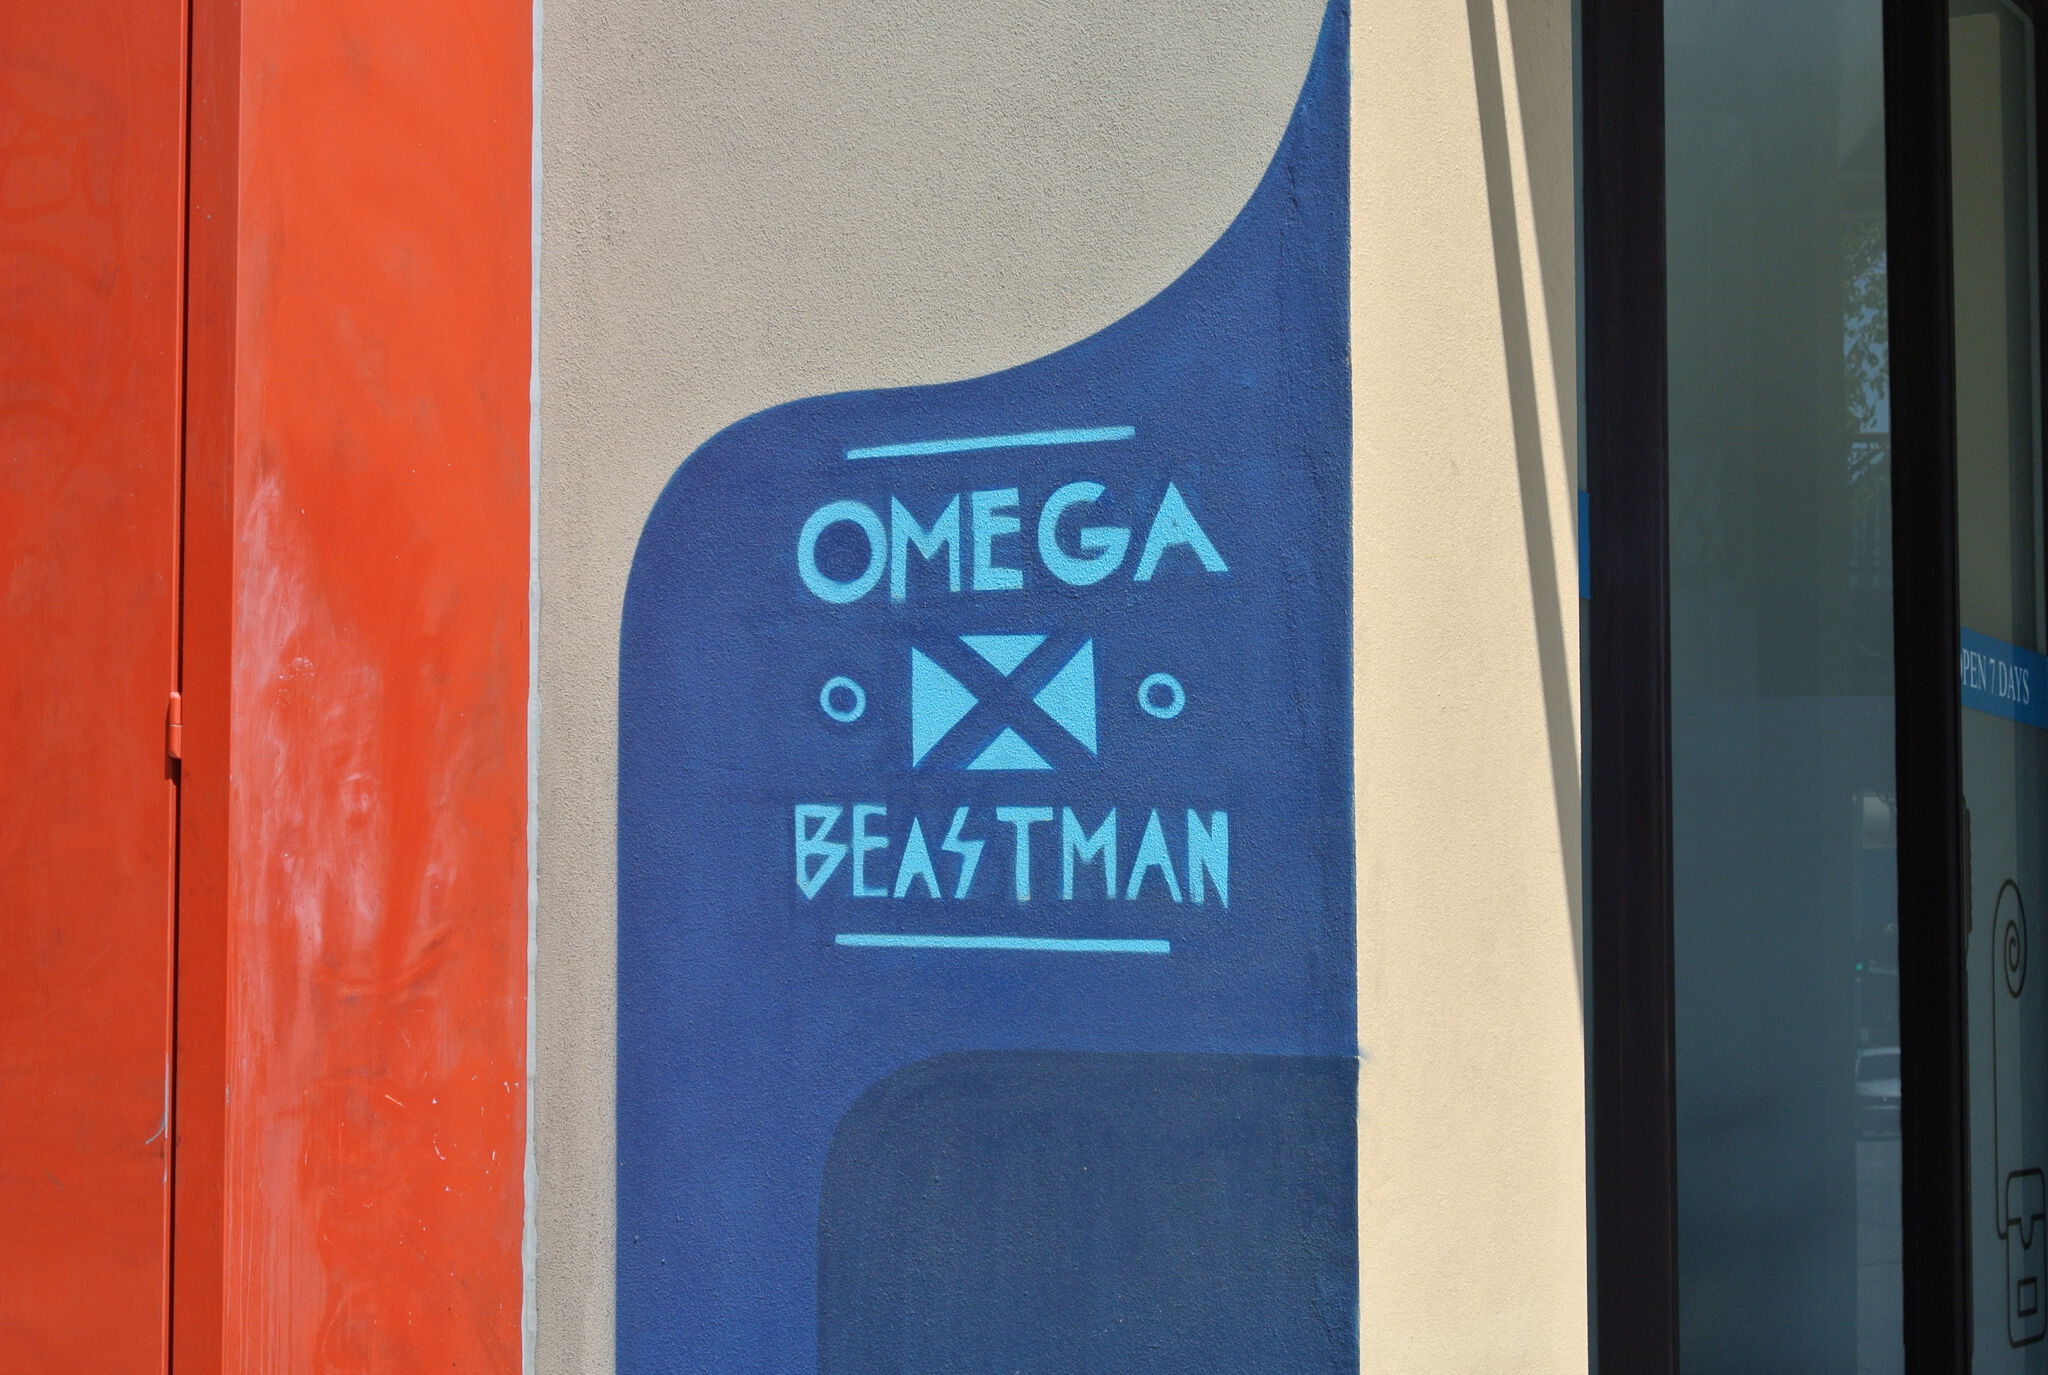 Vans The Omega, Beastman&mdash;Globe Lane Mural